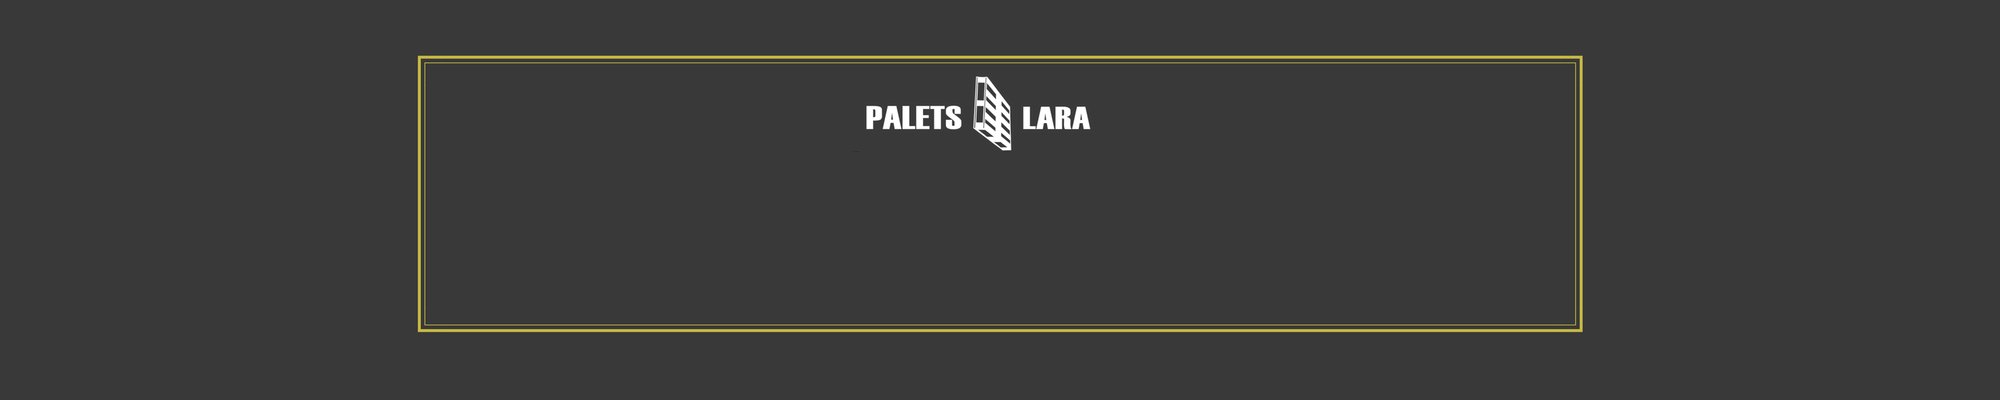 catalogo-palets-lara